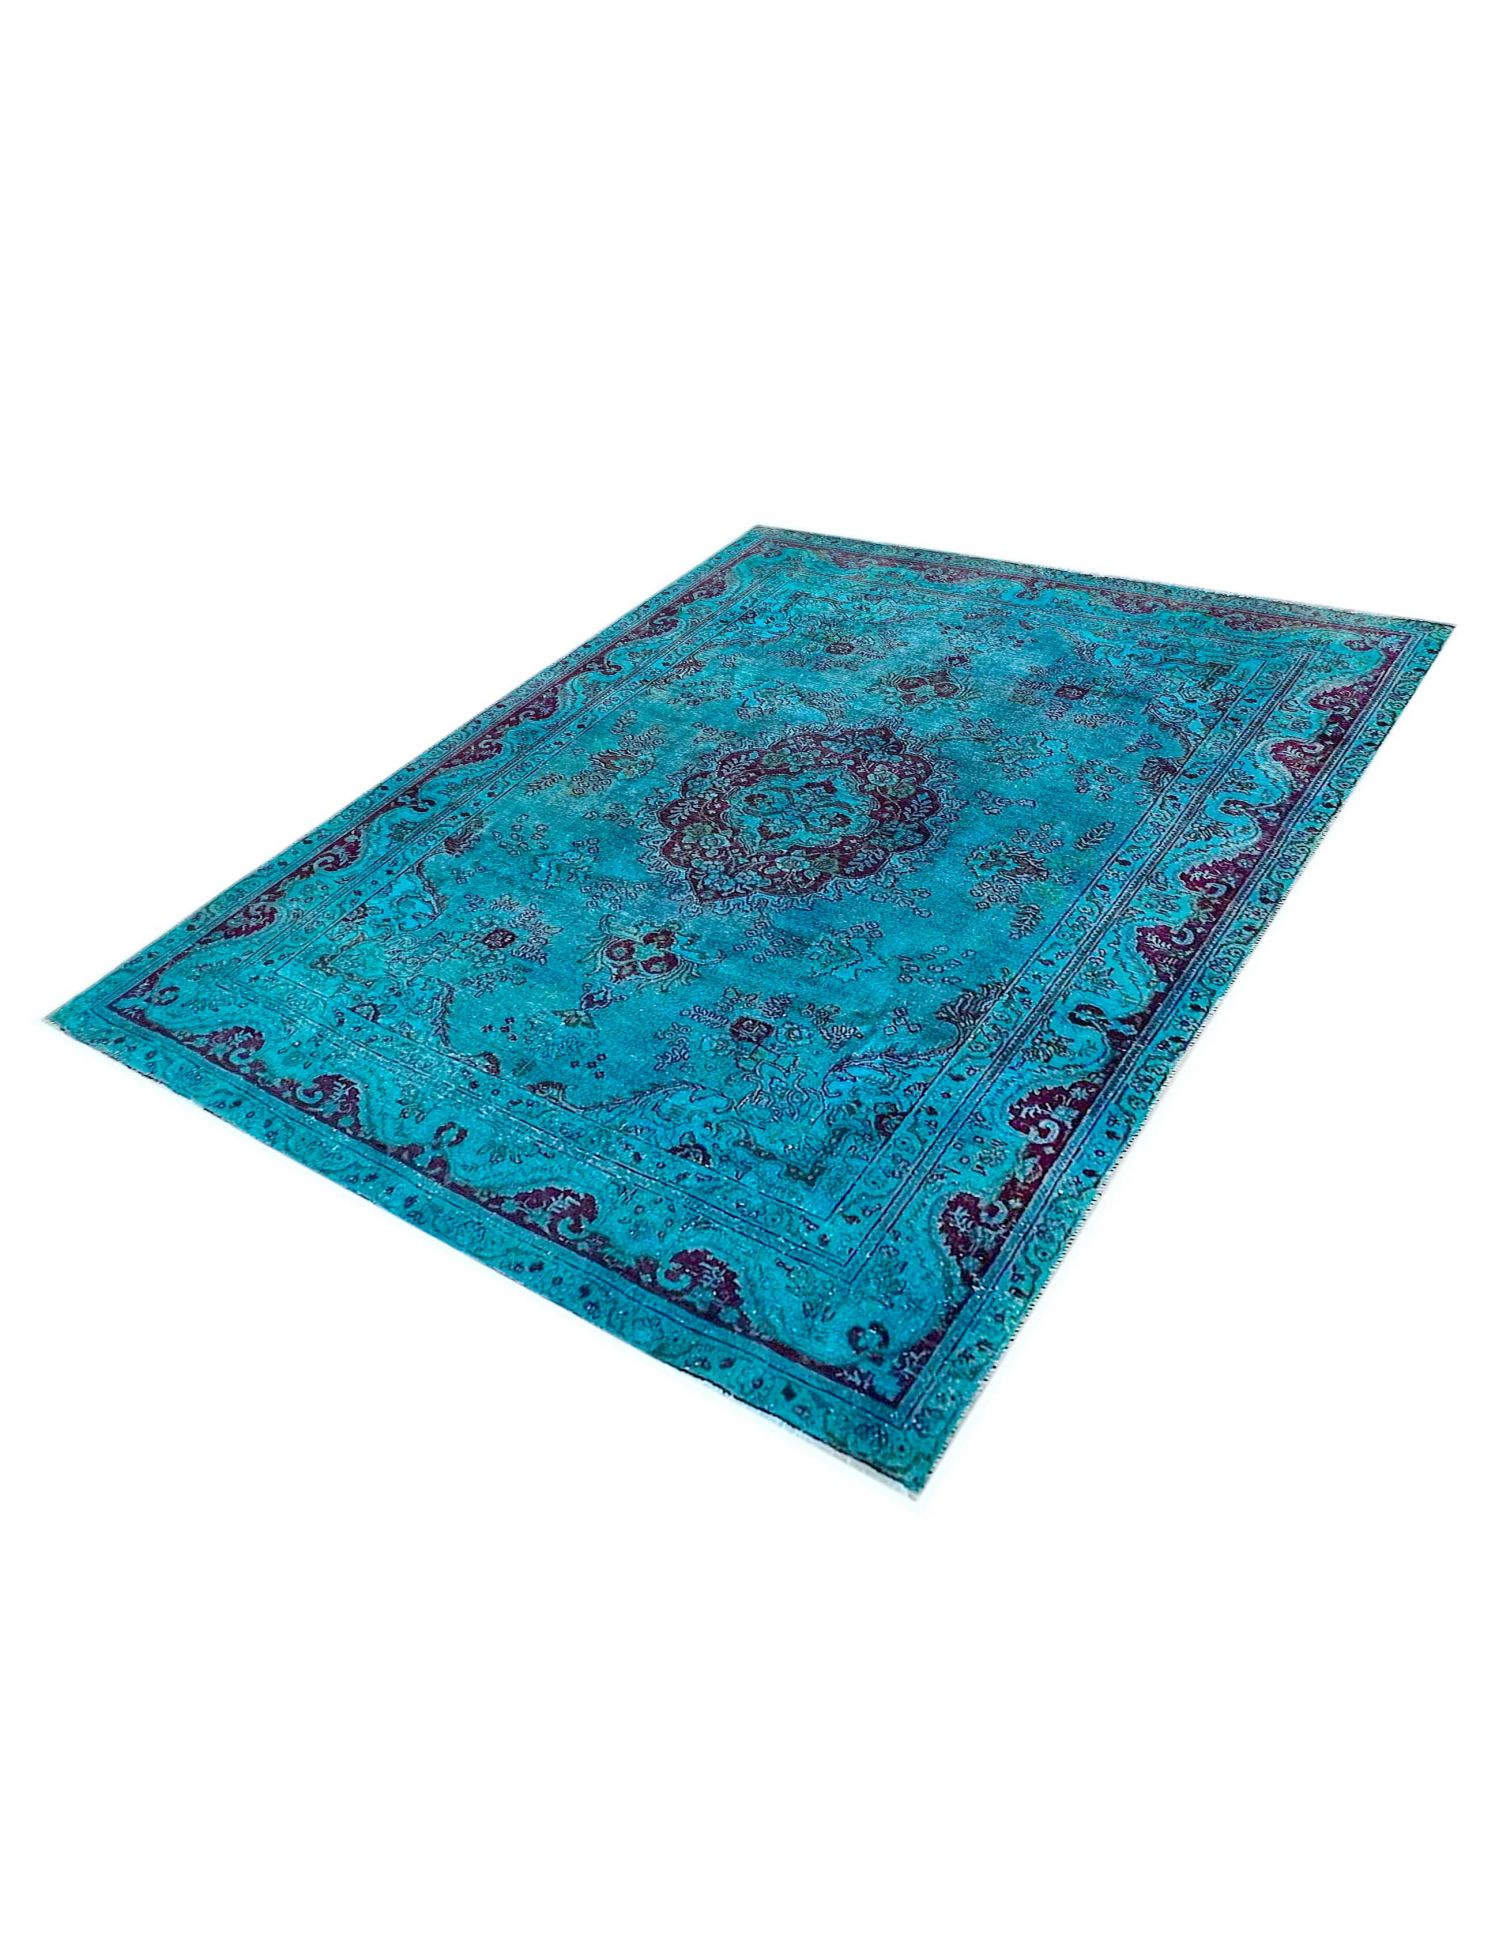 Persischer Vintage Teppich  türkis <br/>277 x 200 cm